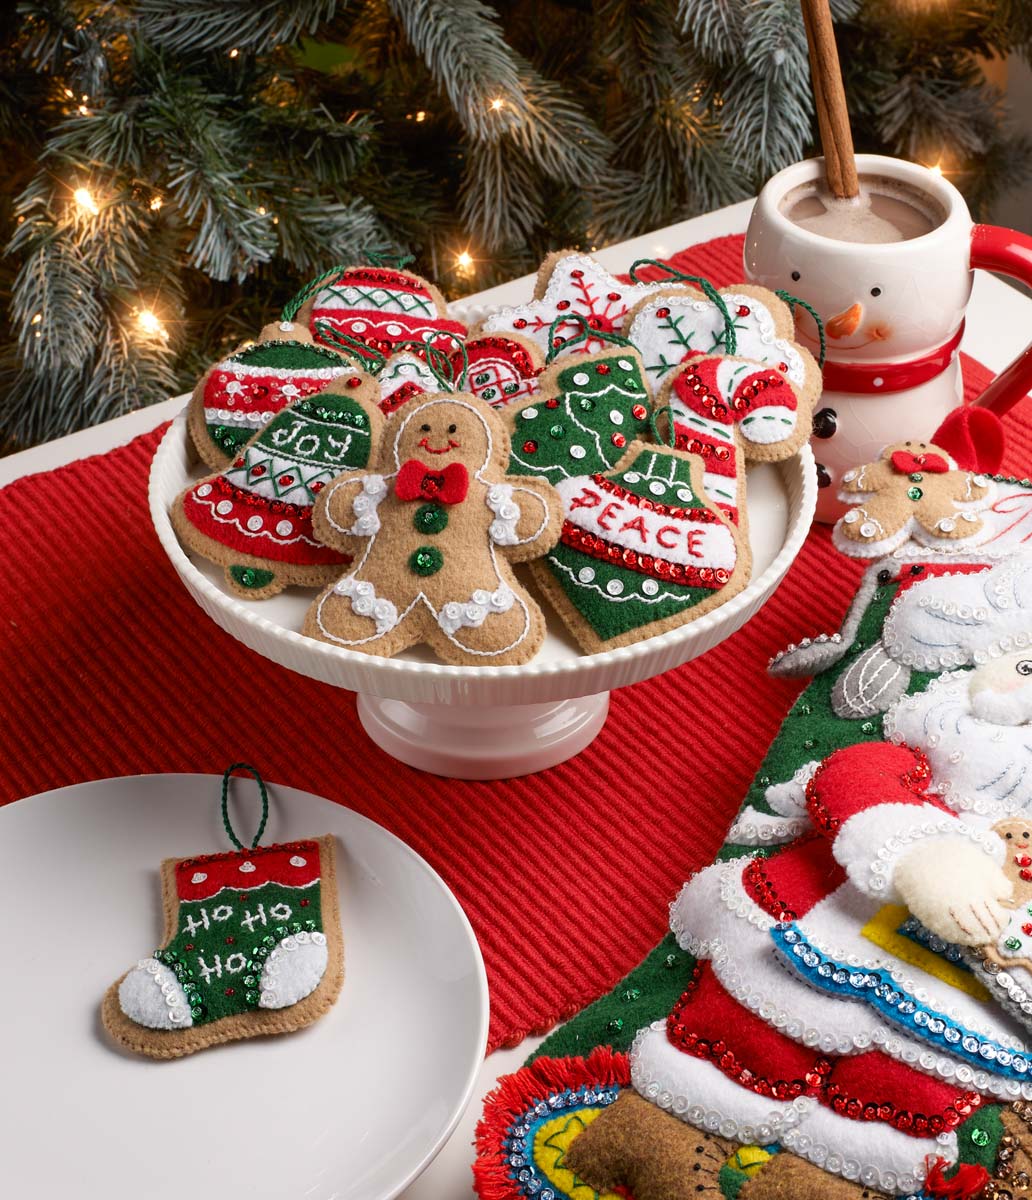 Bucilla - Gingerbread Santa